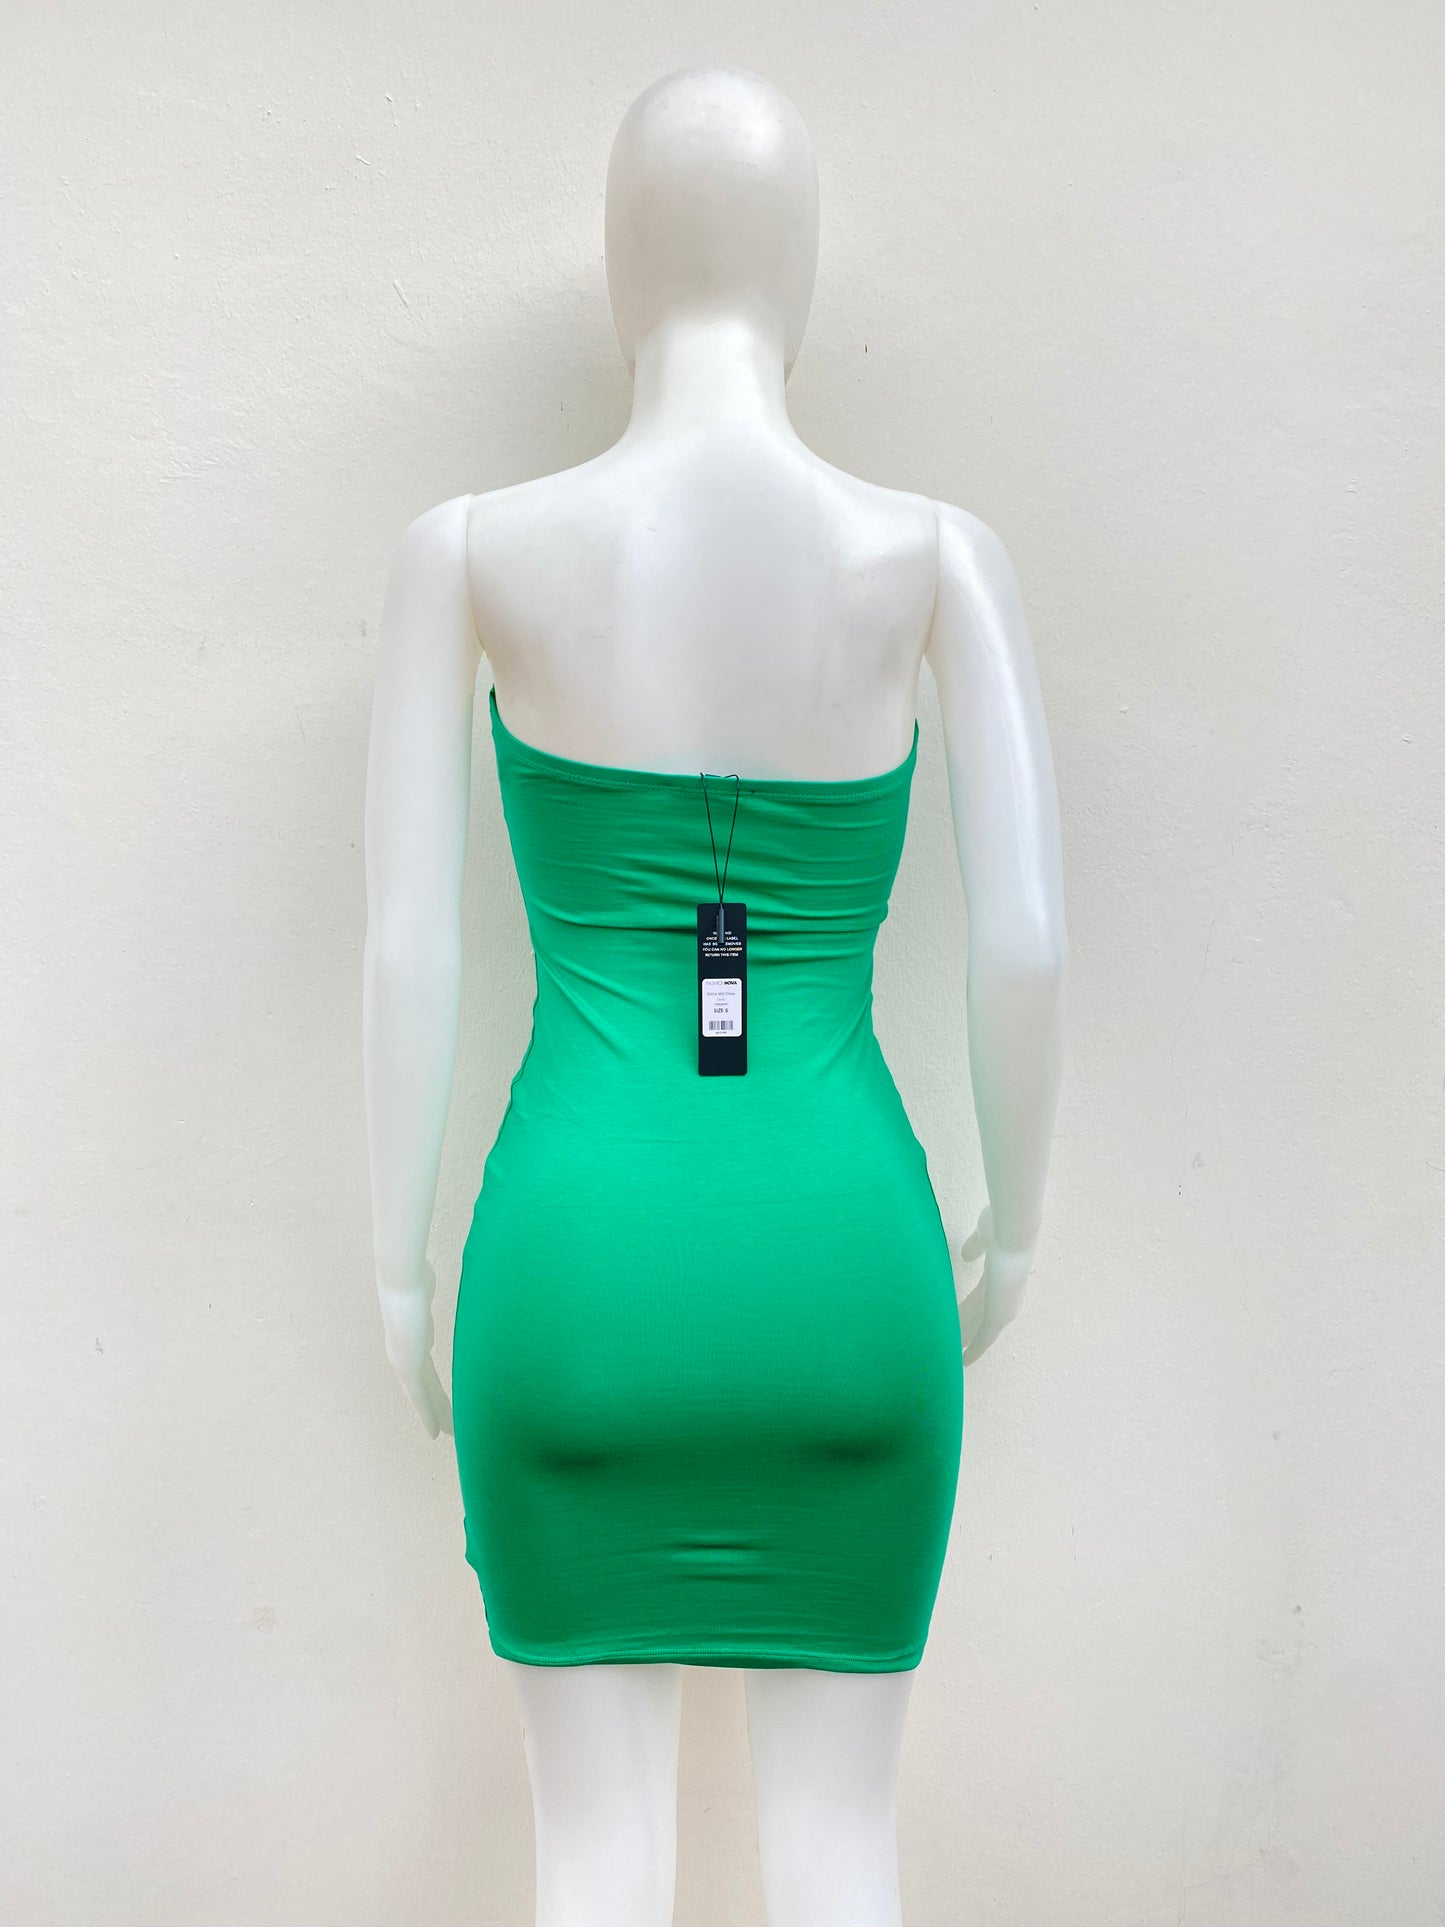 Vestido Strapless Fashion Nova original, verde con elástico debajo de los brazos.